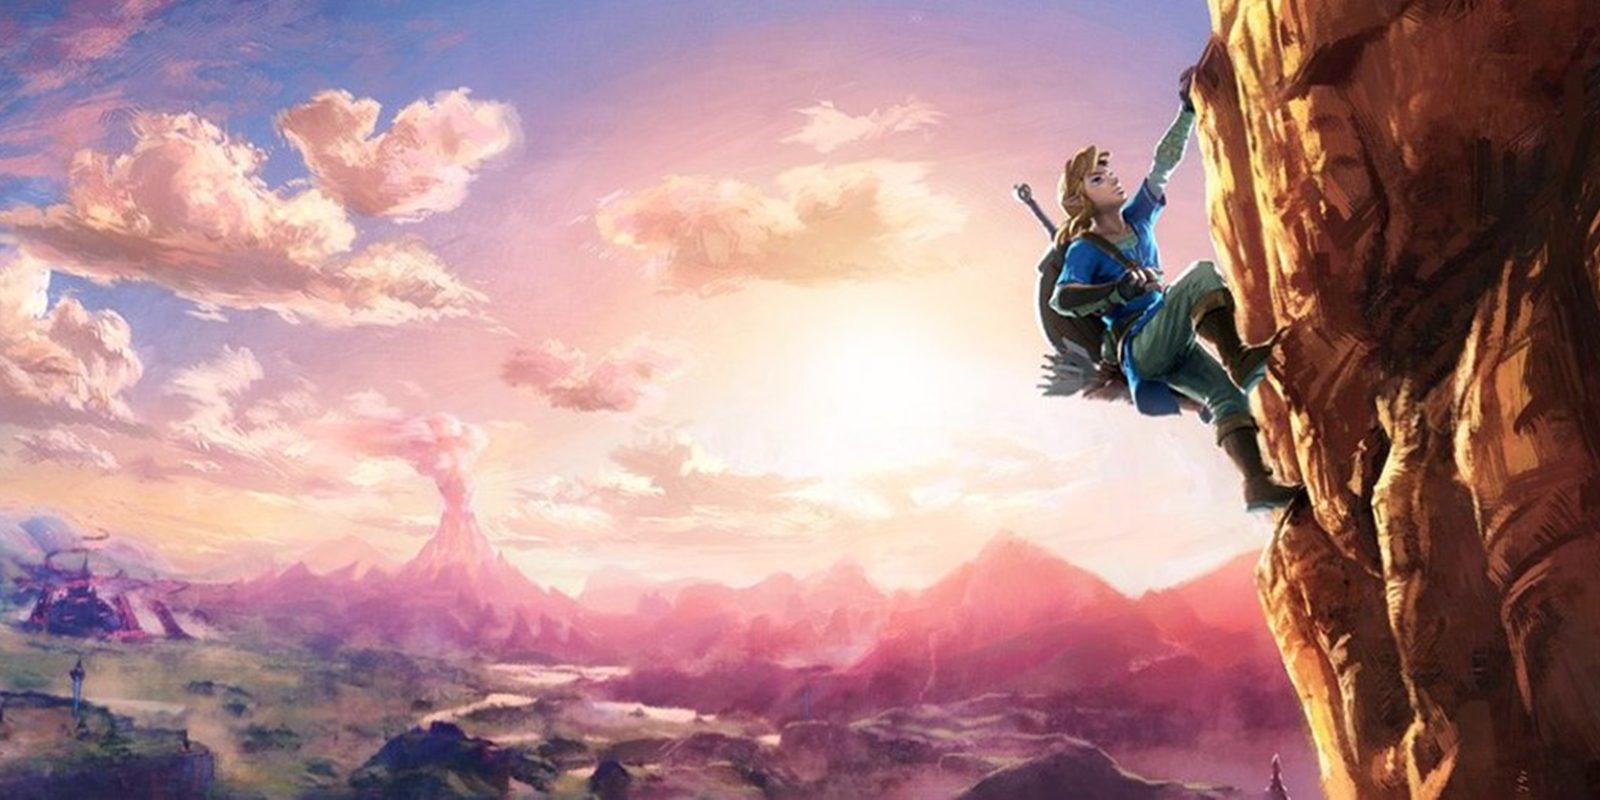 Será posible completar 'The Legend of Zelda: Breath of the Wild' yendo siempre en calzoncillos